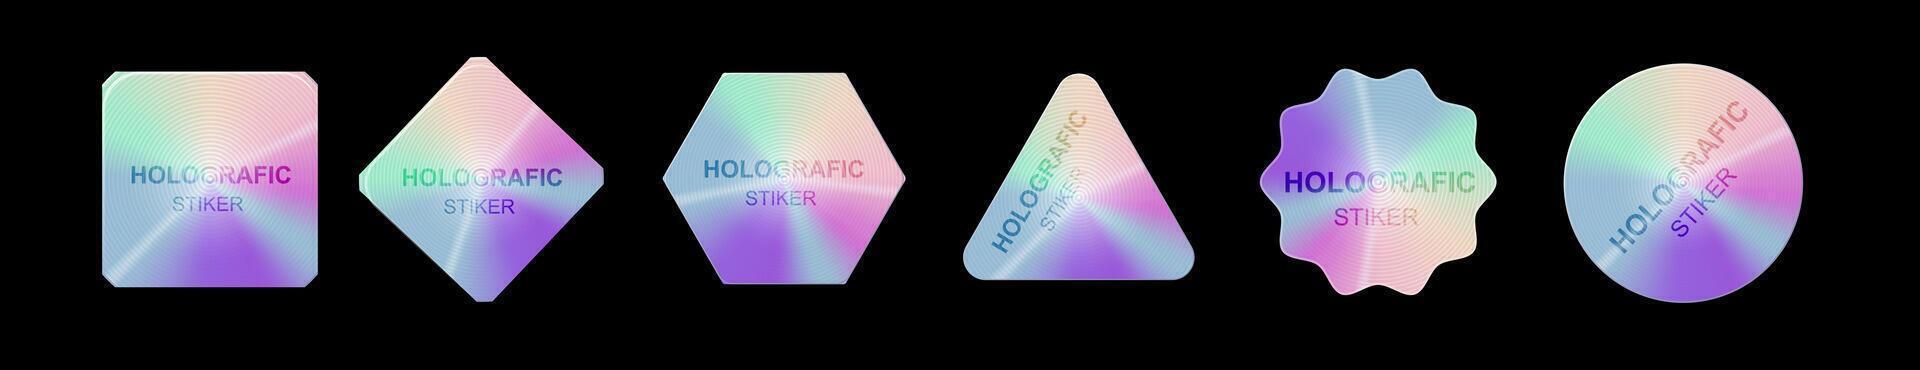 holografiska klistermärken. hologram etiketter former vektor